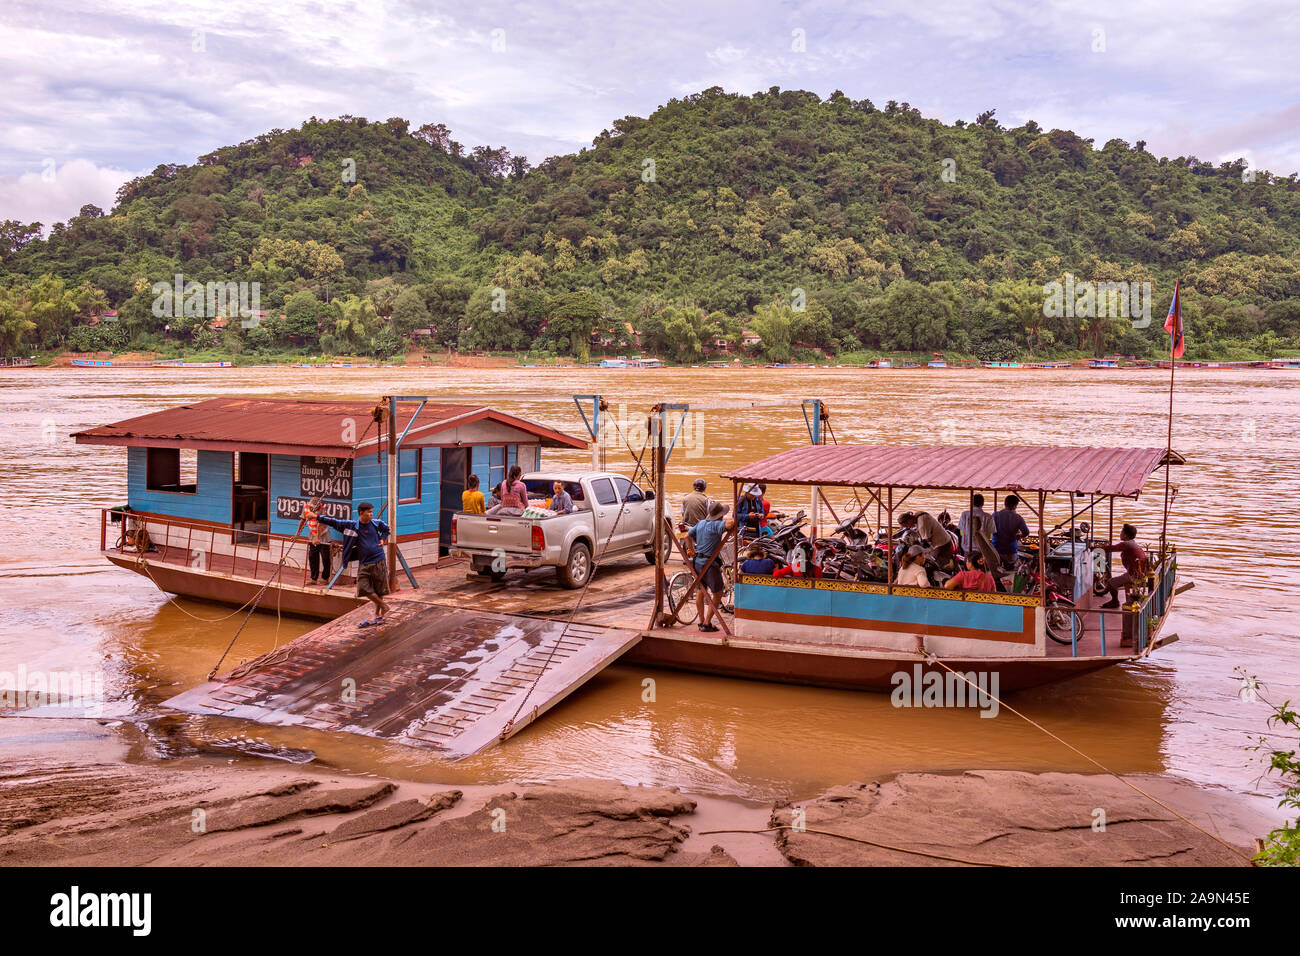 Un ferry de coche cargado en el poderoso río Mekong en la pintoresca ciudad de Luang Prabang, declarada Patrimonio de la Humanidad, en Laos, sudeste asiático. Foto de stock